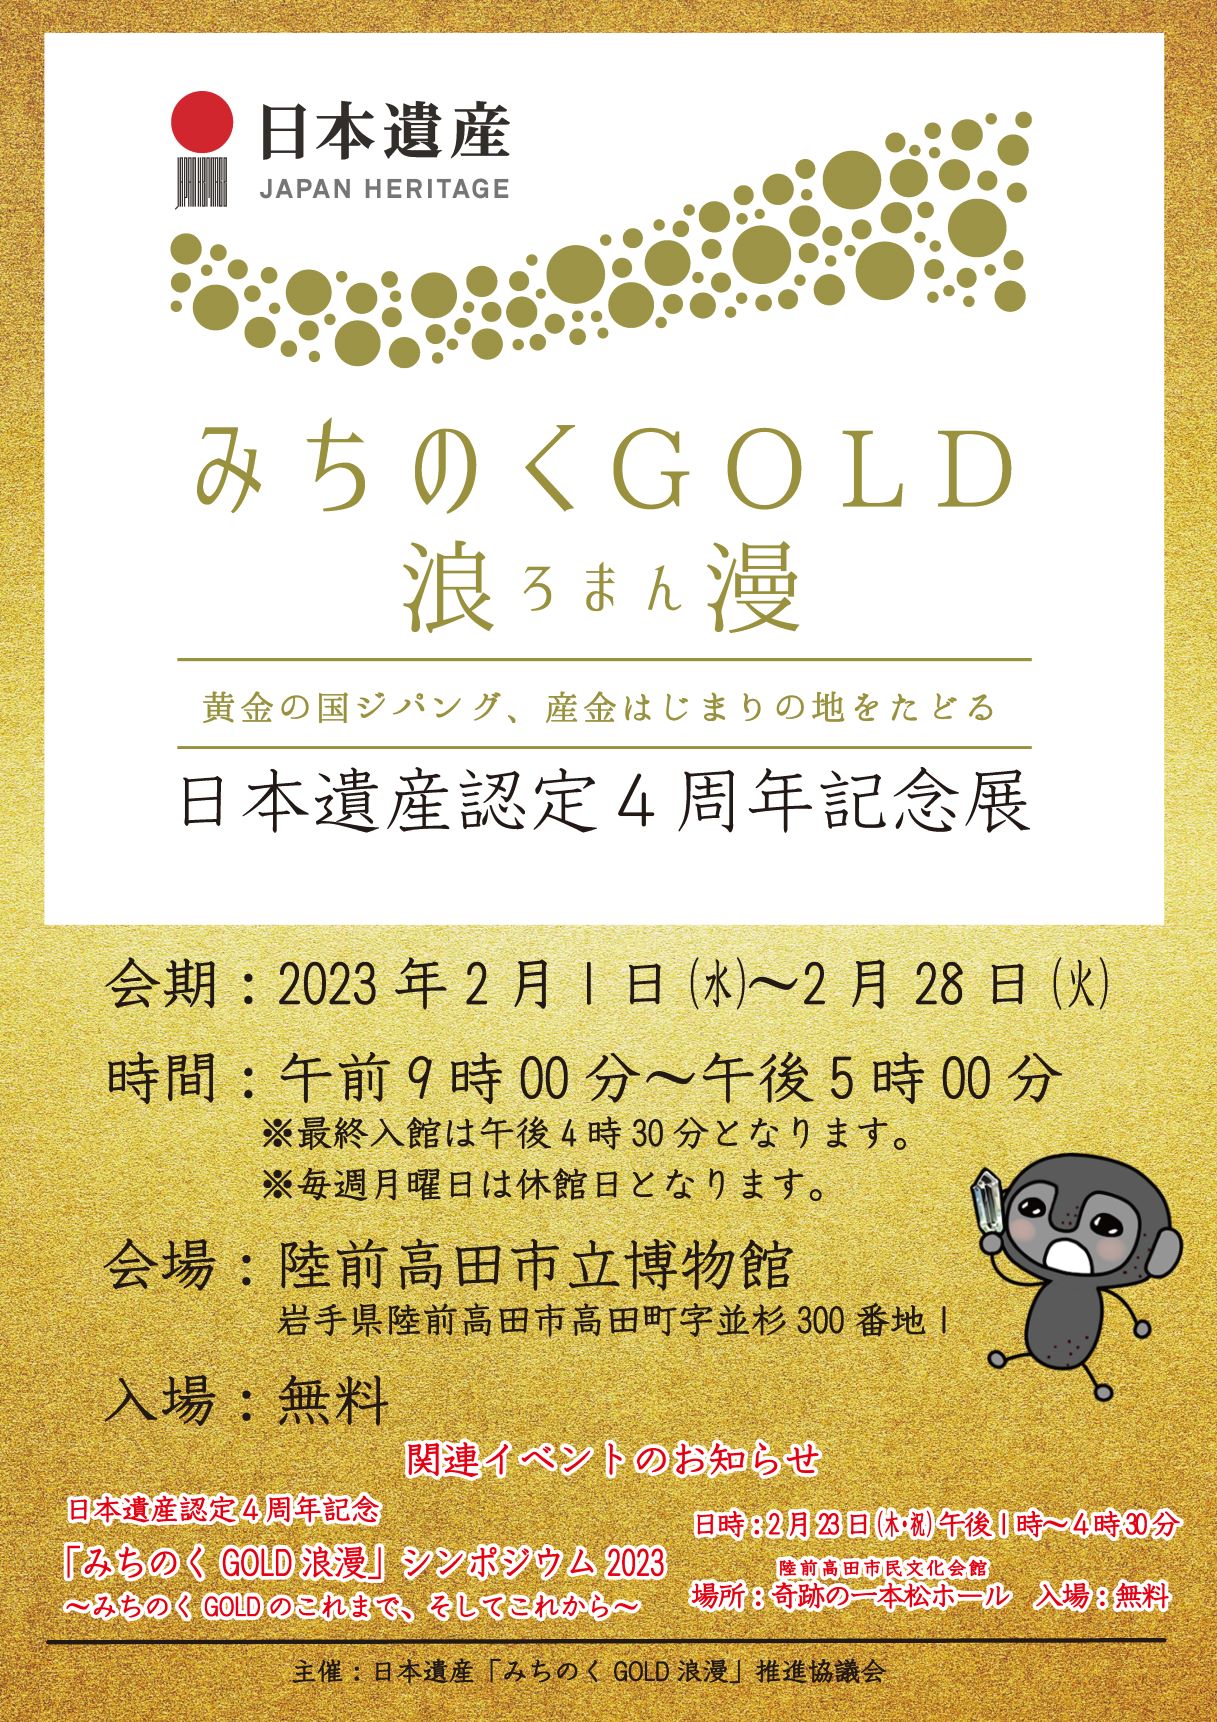 日本遺産認定4周年記念展「日本遺産『みちのくGOLD浪漫』」チラシ